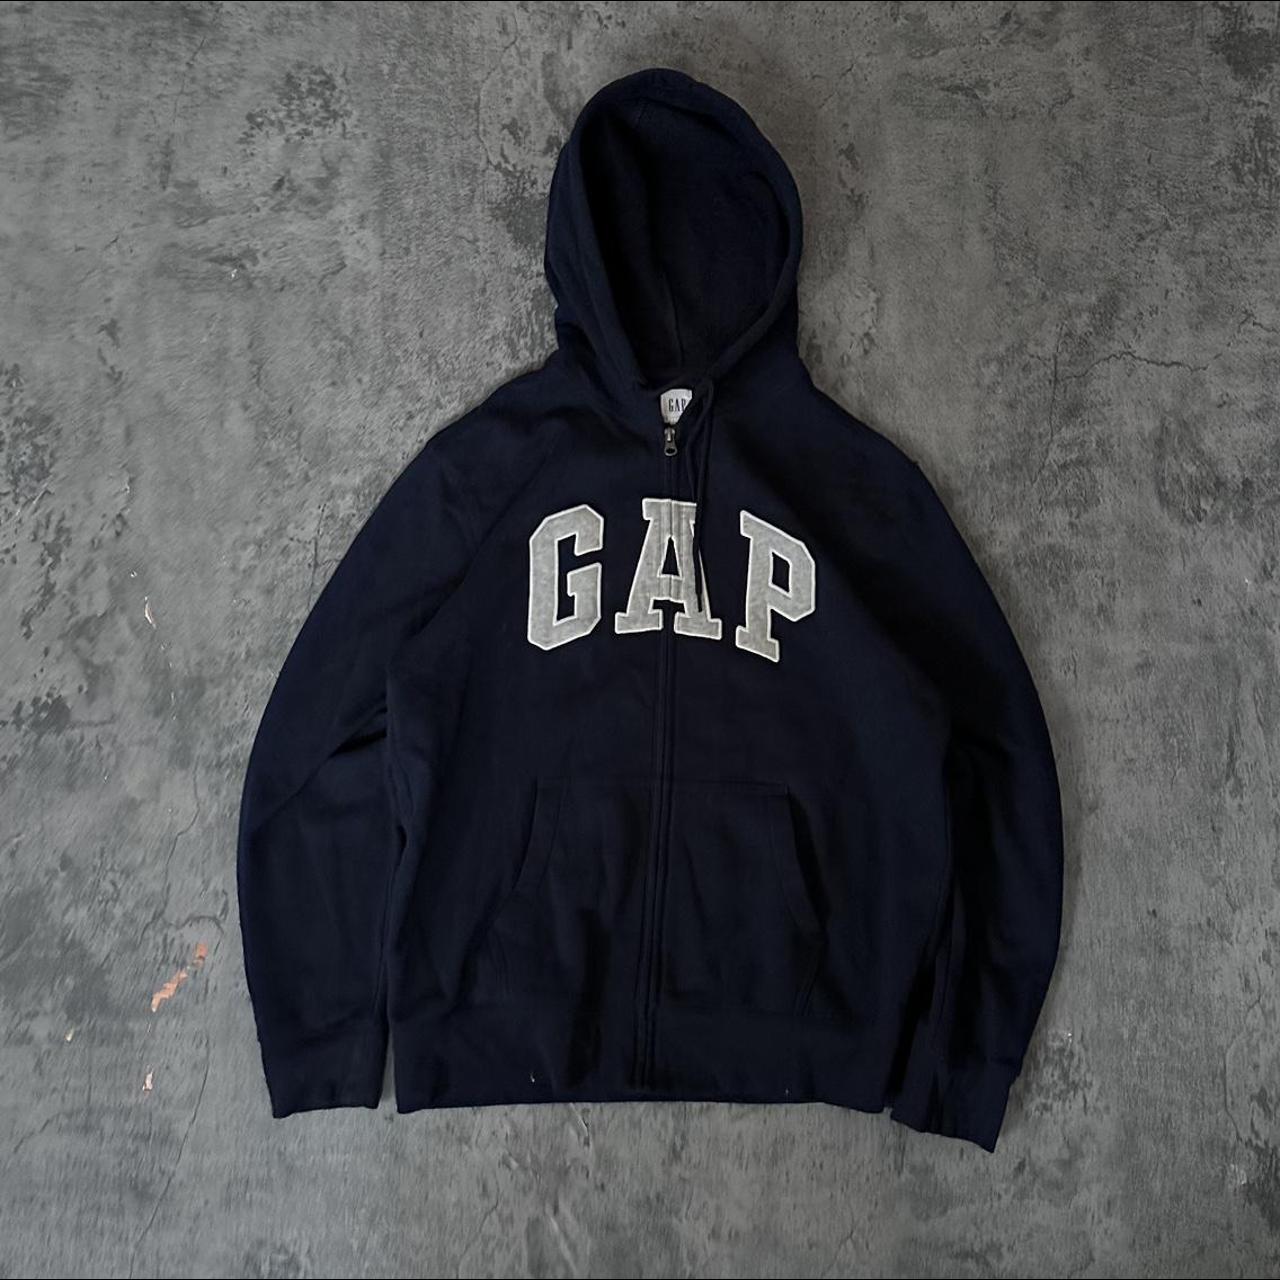 vintage 90s gap navy blue hoodie sz large... - Depop